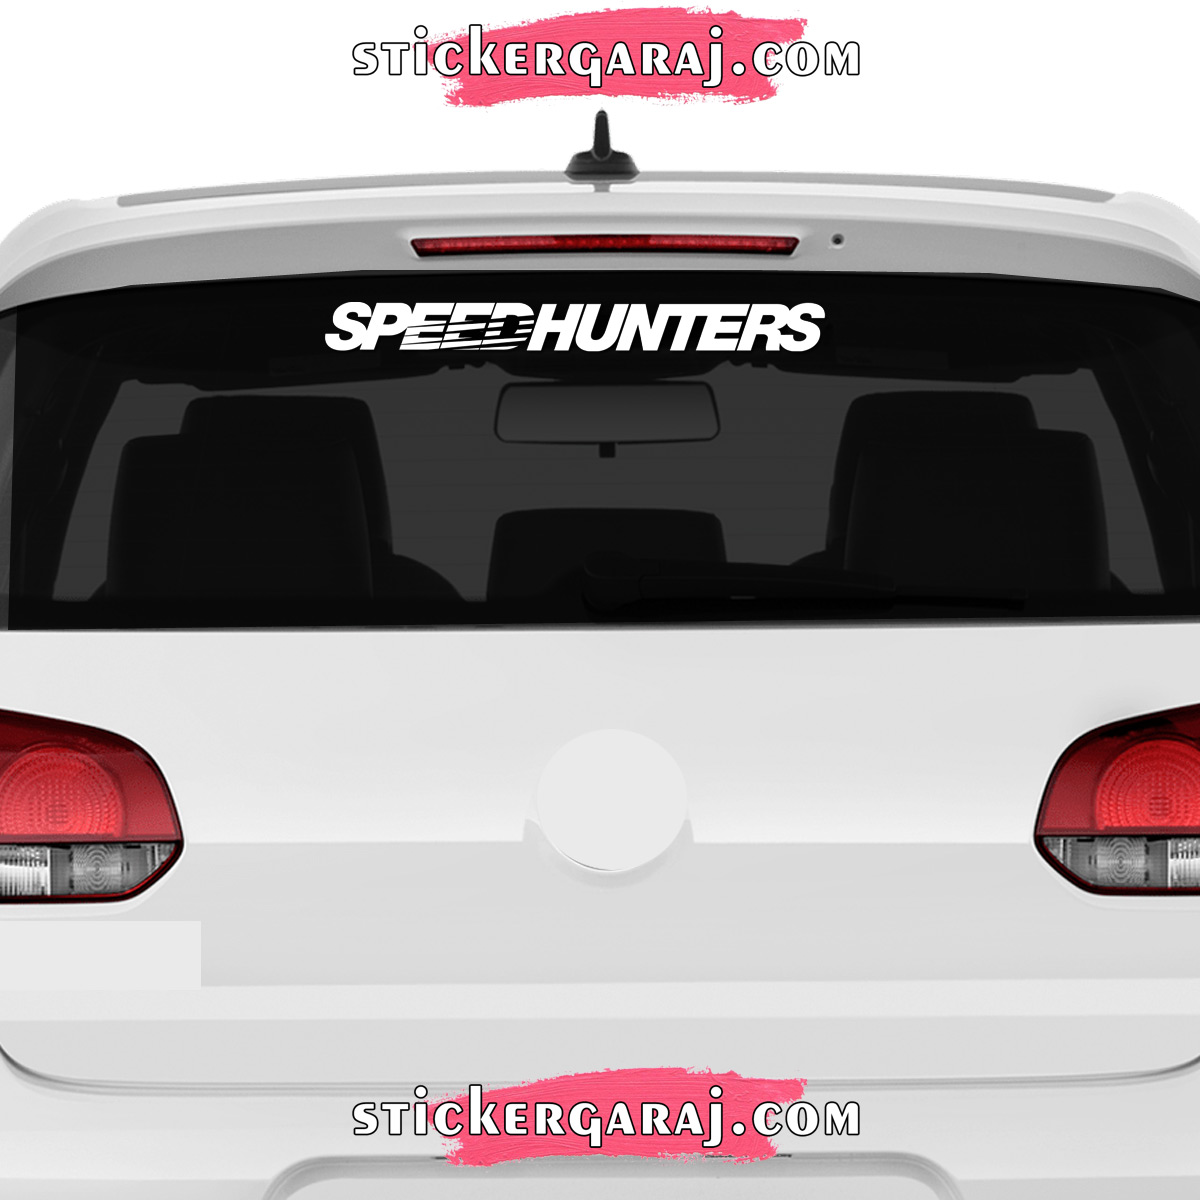 Kia cam sticker - Kia cam sticker - speedhunters